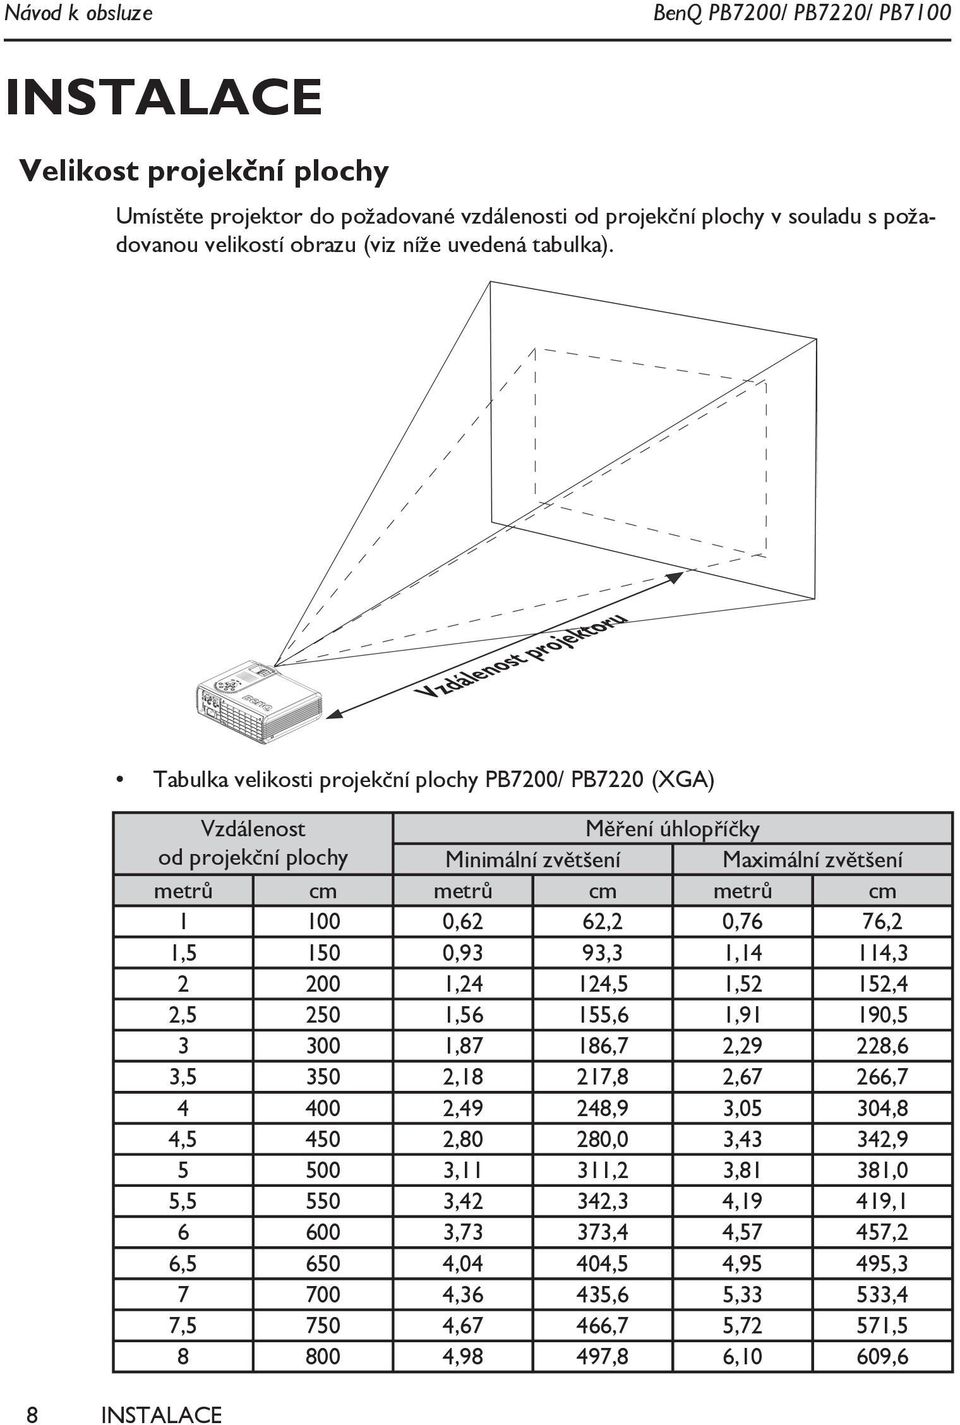 Vzdálenost projektoru Tabulka velikosti projekční plochy PB7200/ PB7220 (XGA) Vzdálenost Měření úhlopříčky od projekční plochy Minimální zvětšení Maximální zvětšení metrů cm metrů cm metrů cm 1 100